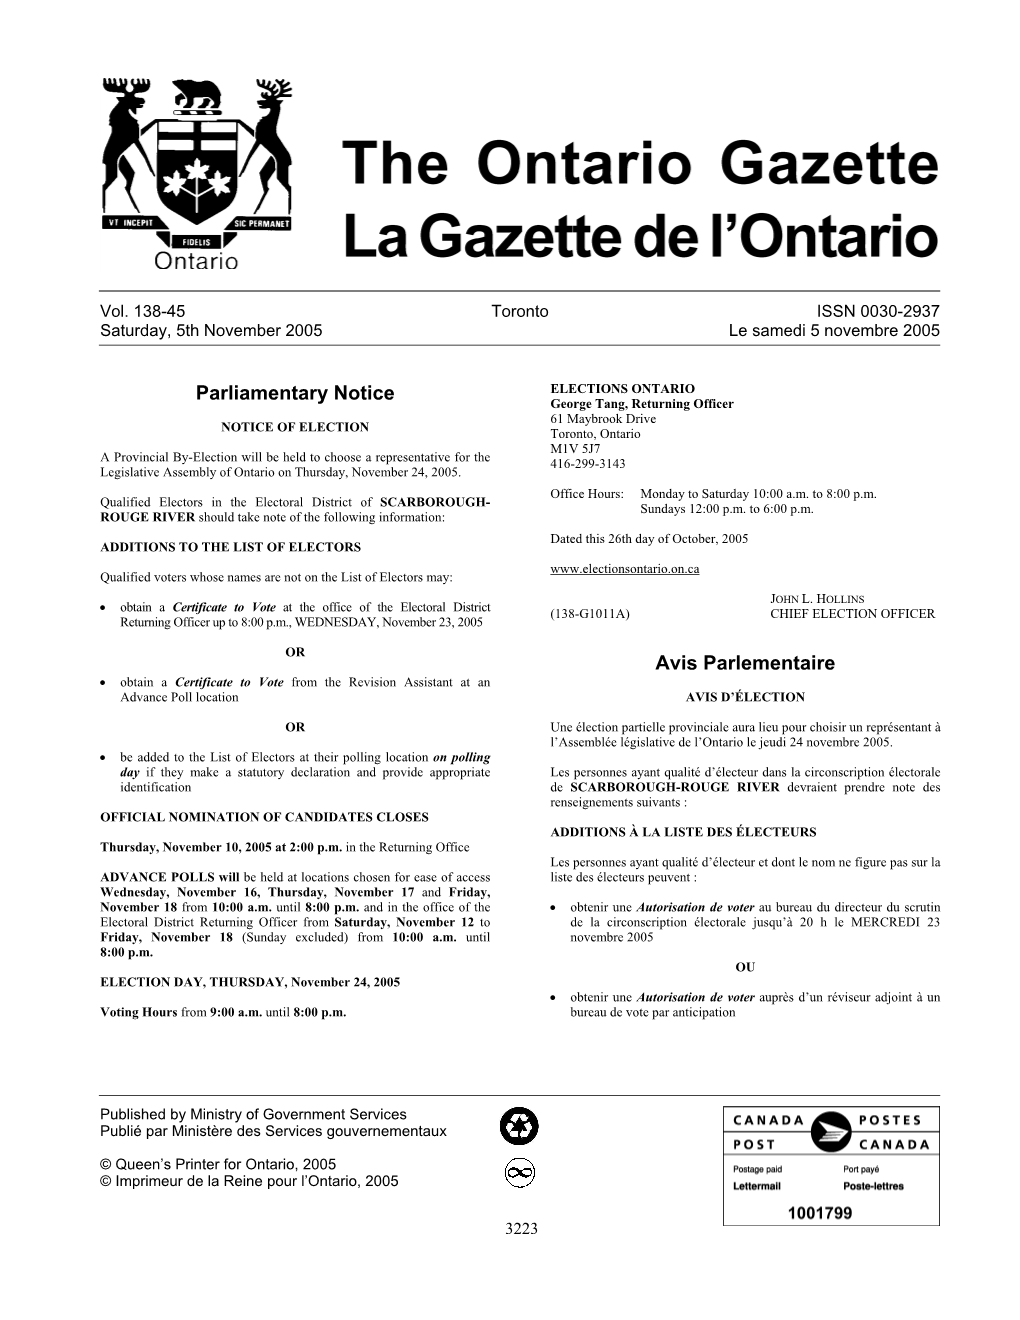 Ontario Gazette Volume 138 Issue 45, La Gazette De L'ontario Volume 138